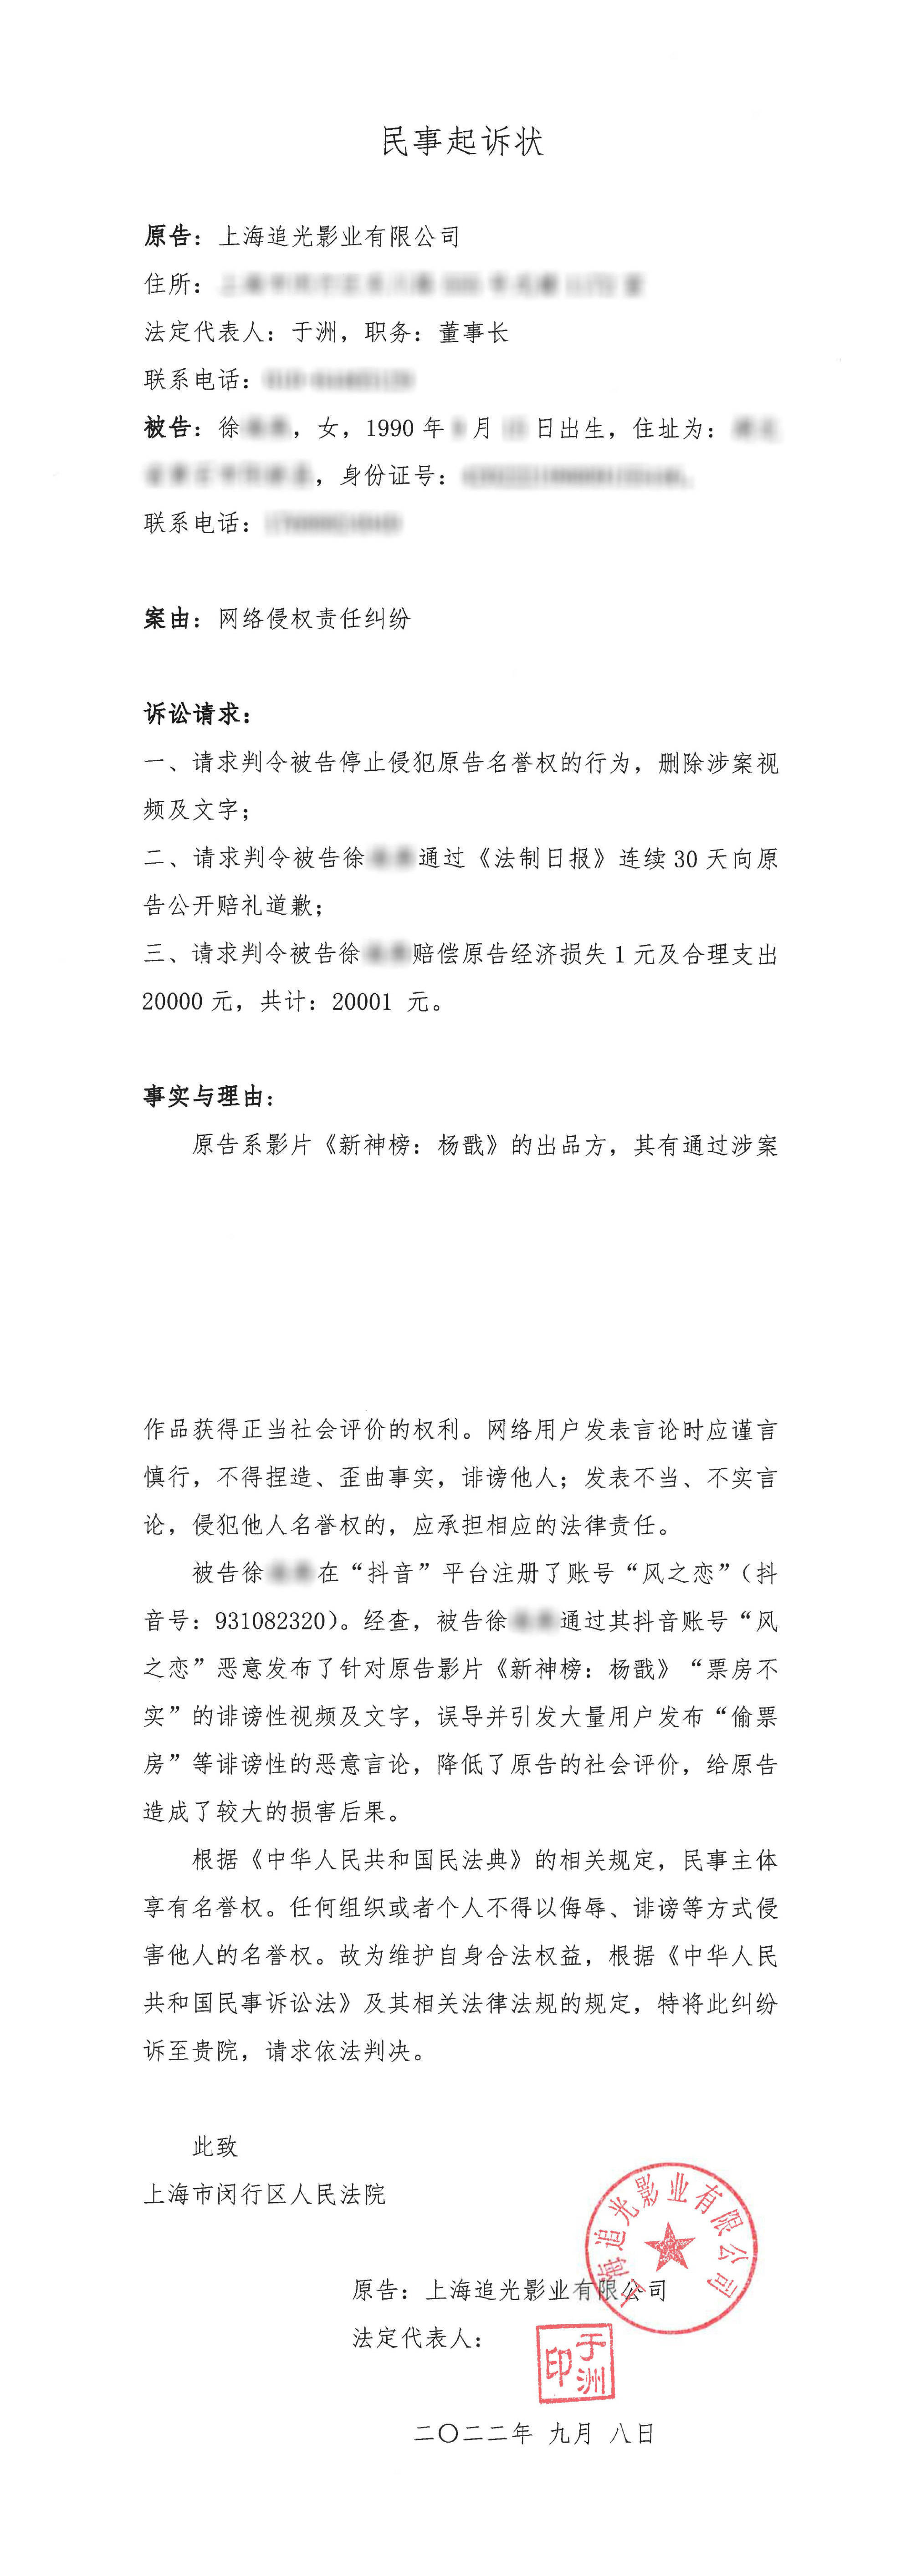 《新神榜：杨戬》针对偷票房恶意不实言论向造谣者正式提起诉讼